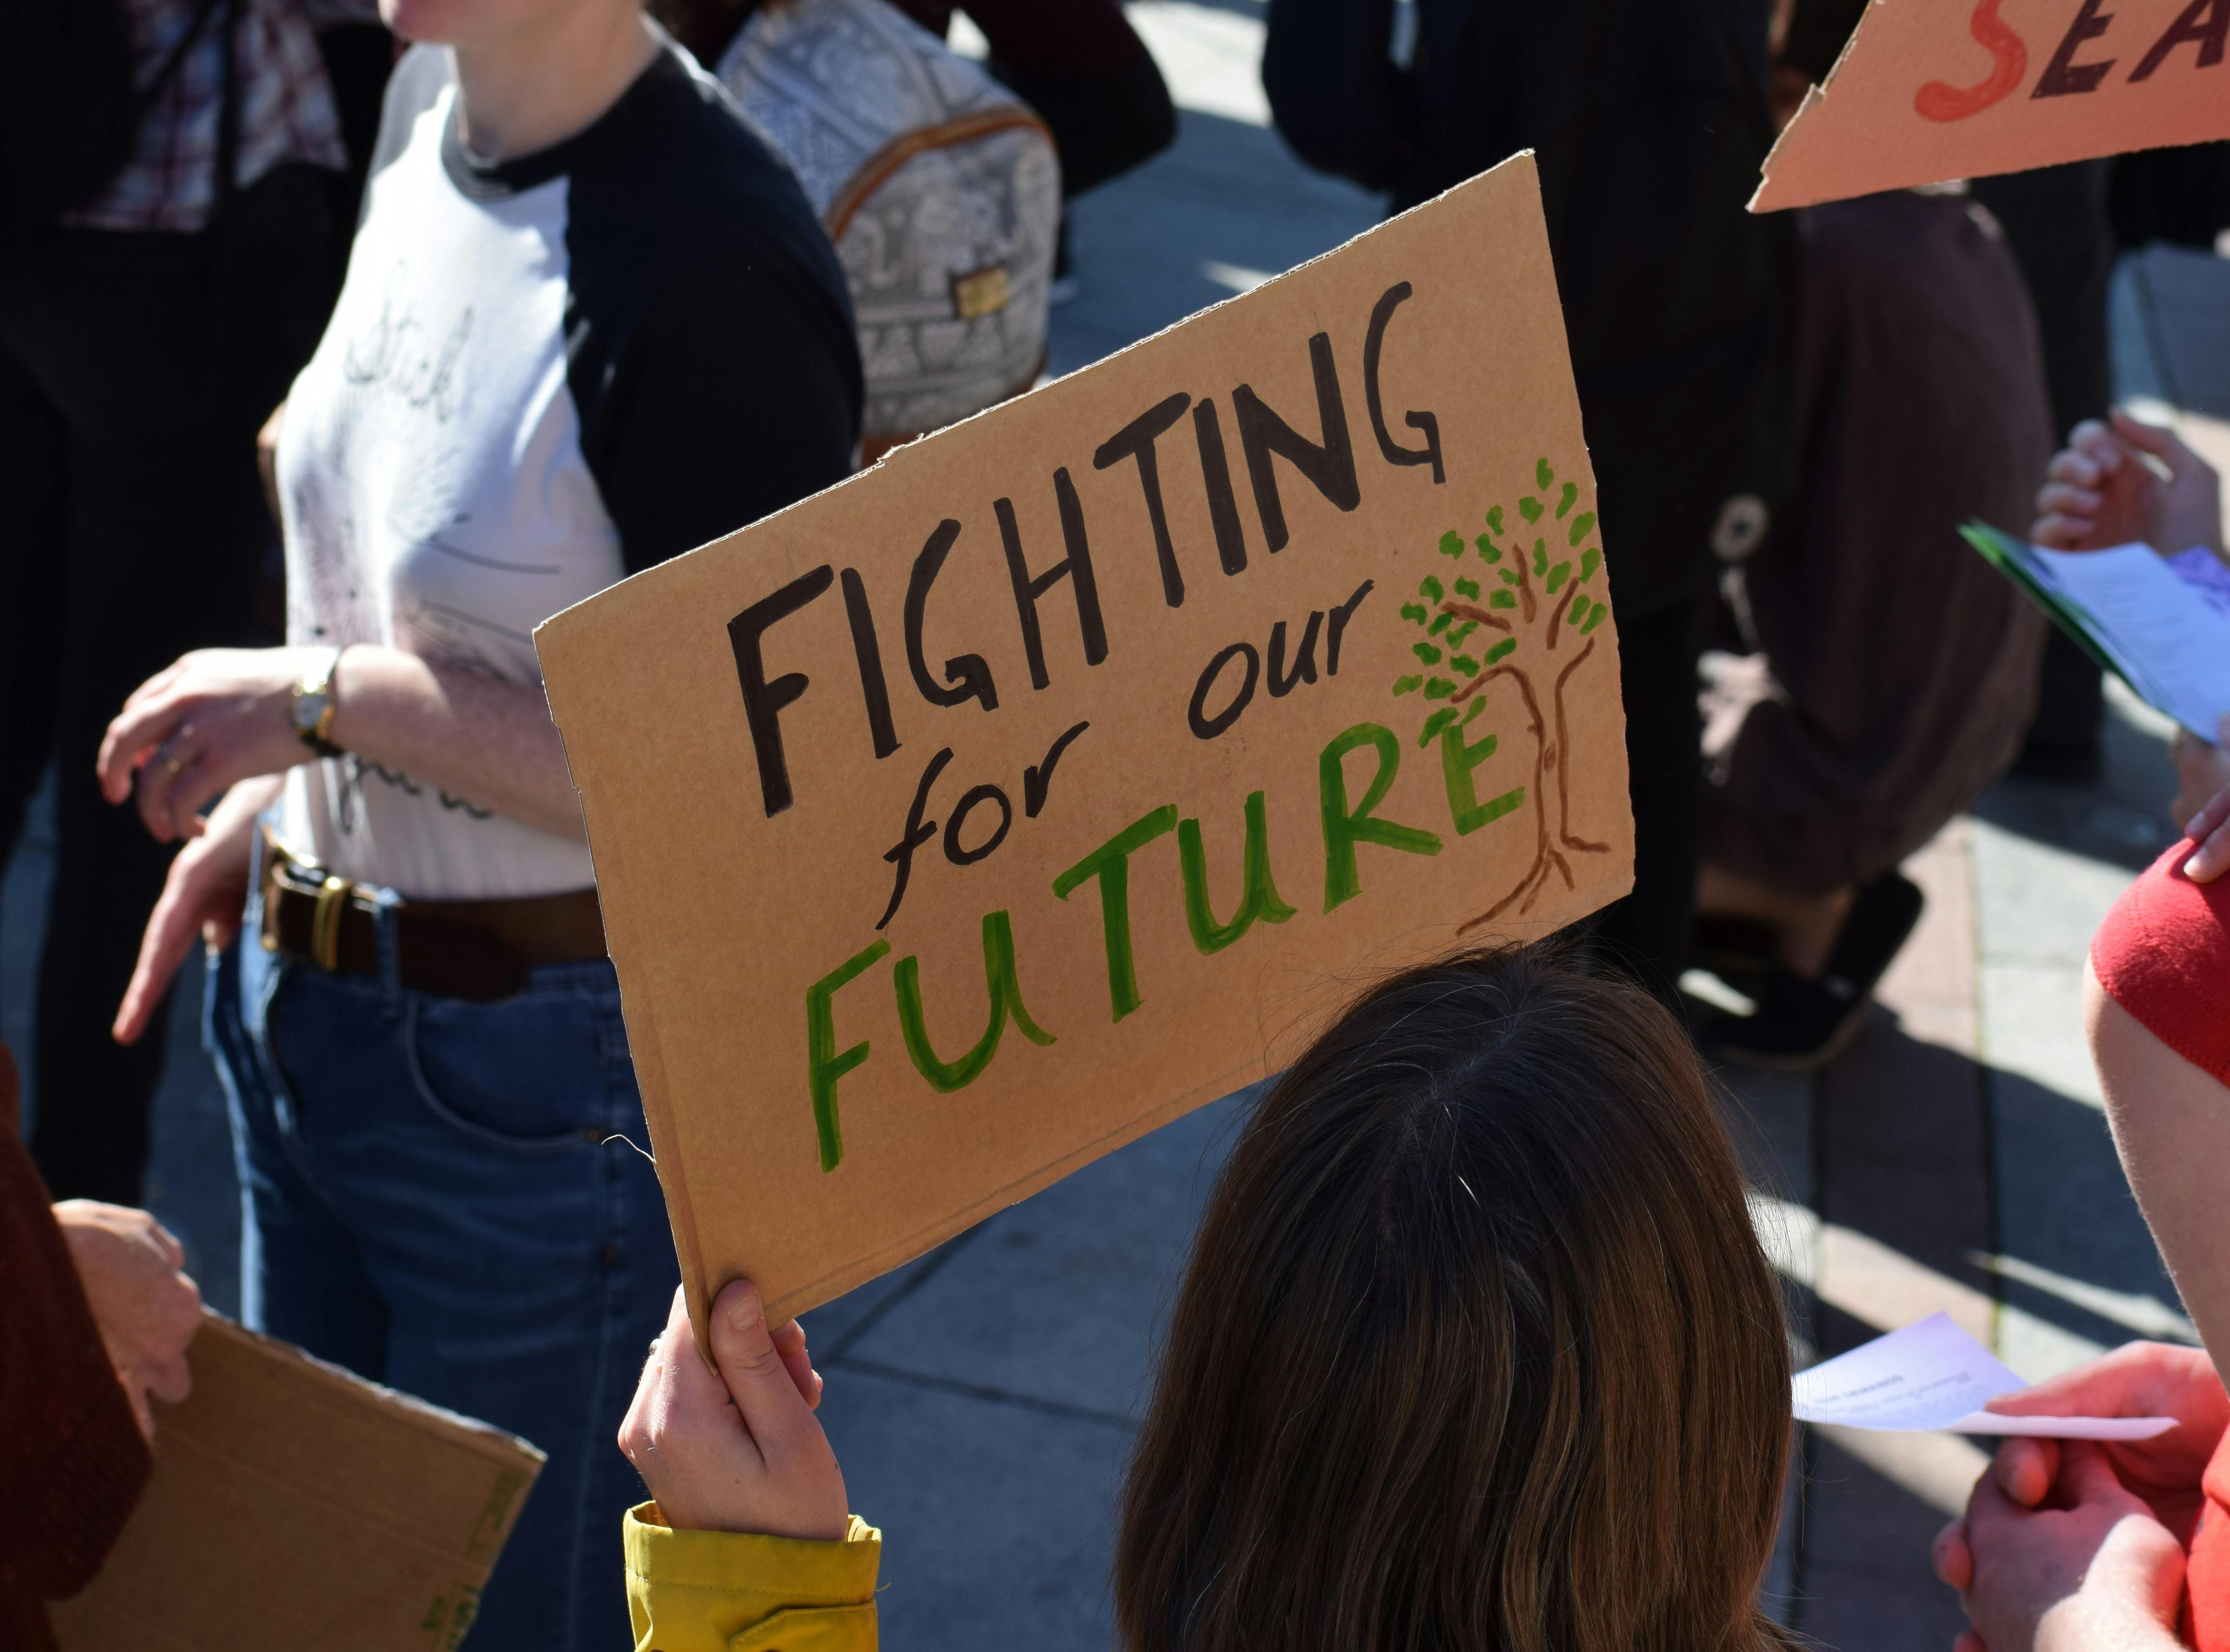 Foto von einer Demonstration. Eine Person, die nur von hinten zu sehen ist, hält ein Pappschild mit der Aufschrift "Fighting for our Future"